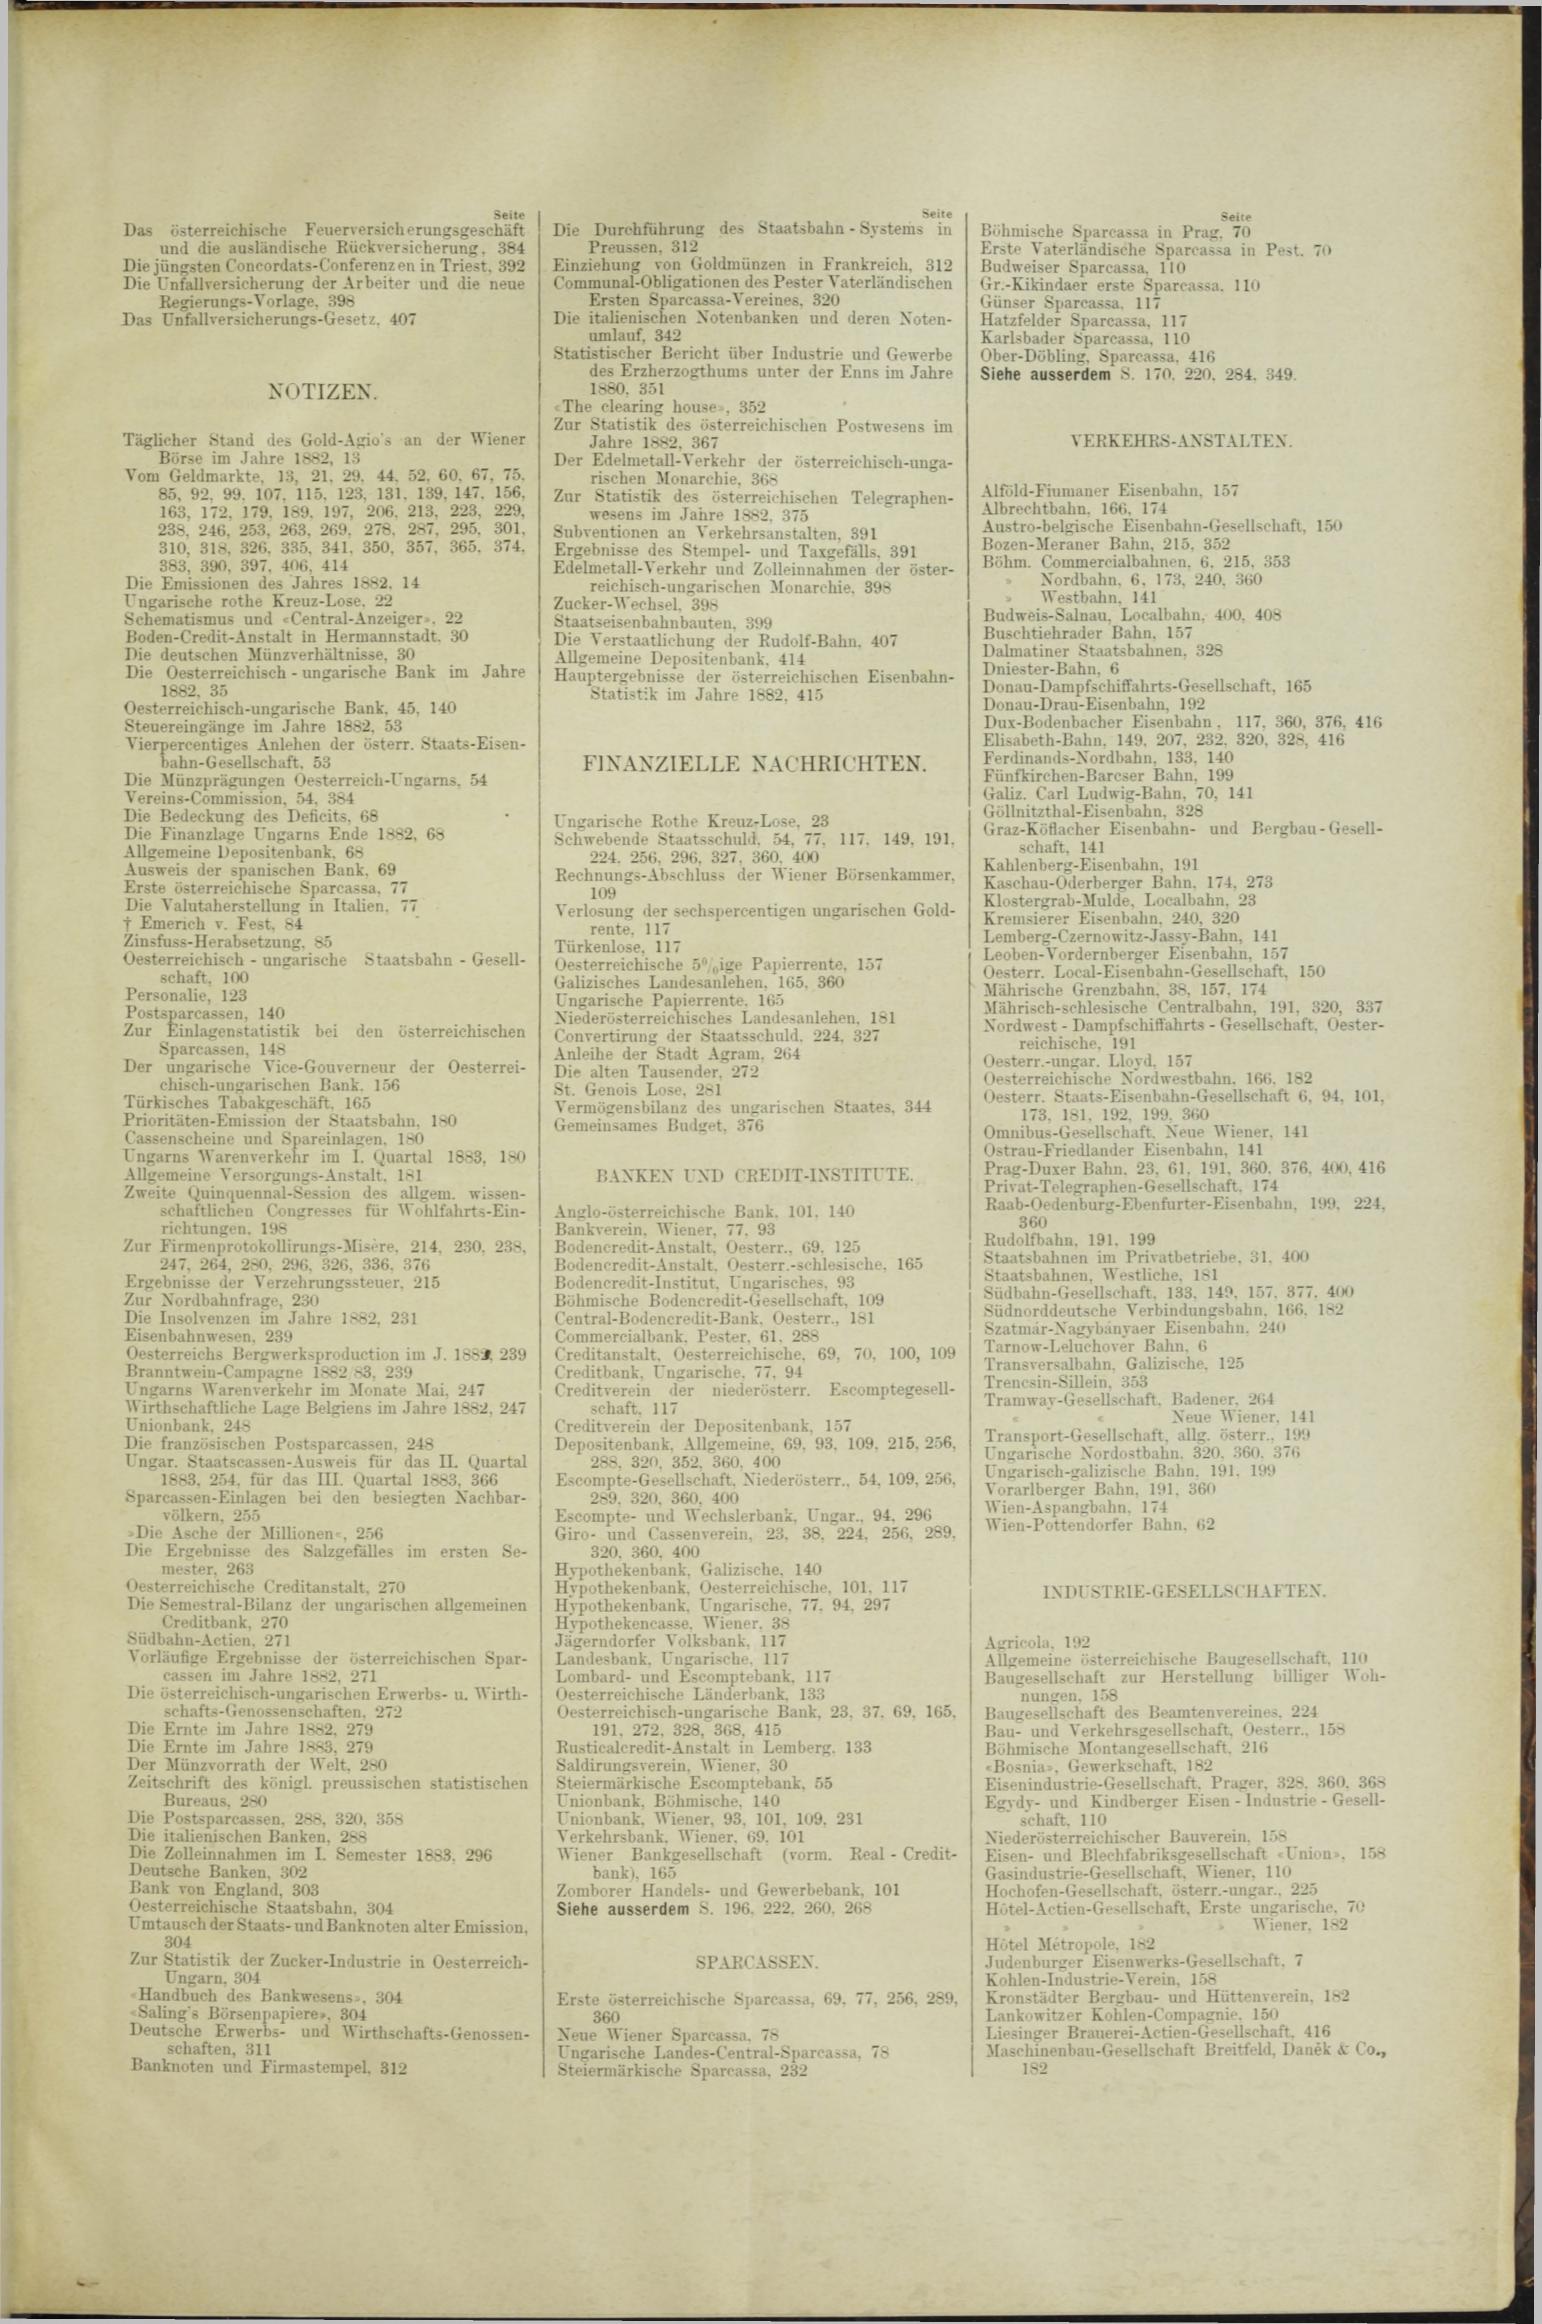 Der Tresor 03.05.1883 - Seite 11